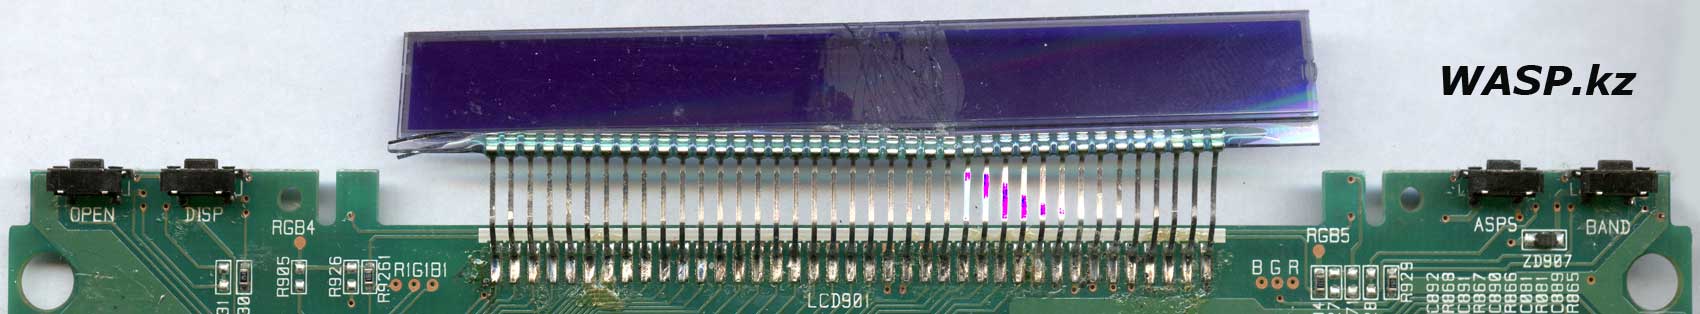 Как заменить дисплей в магнитоле Mystery MMTD-9200S